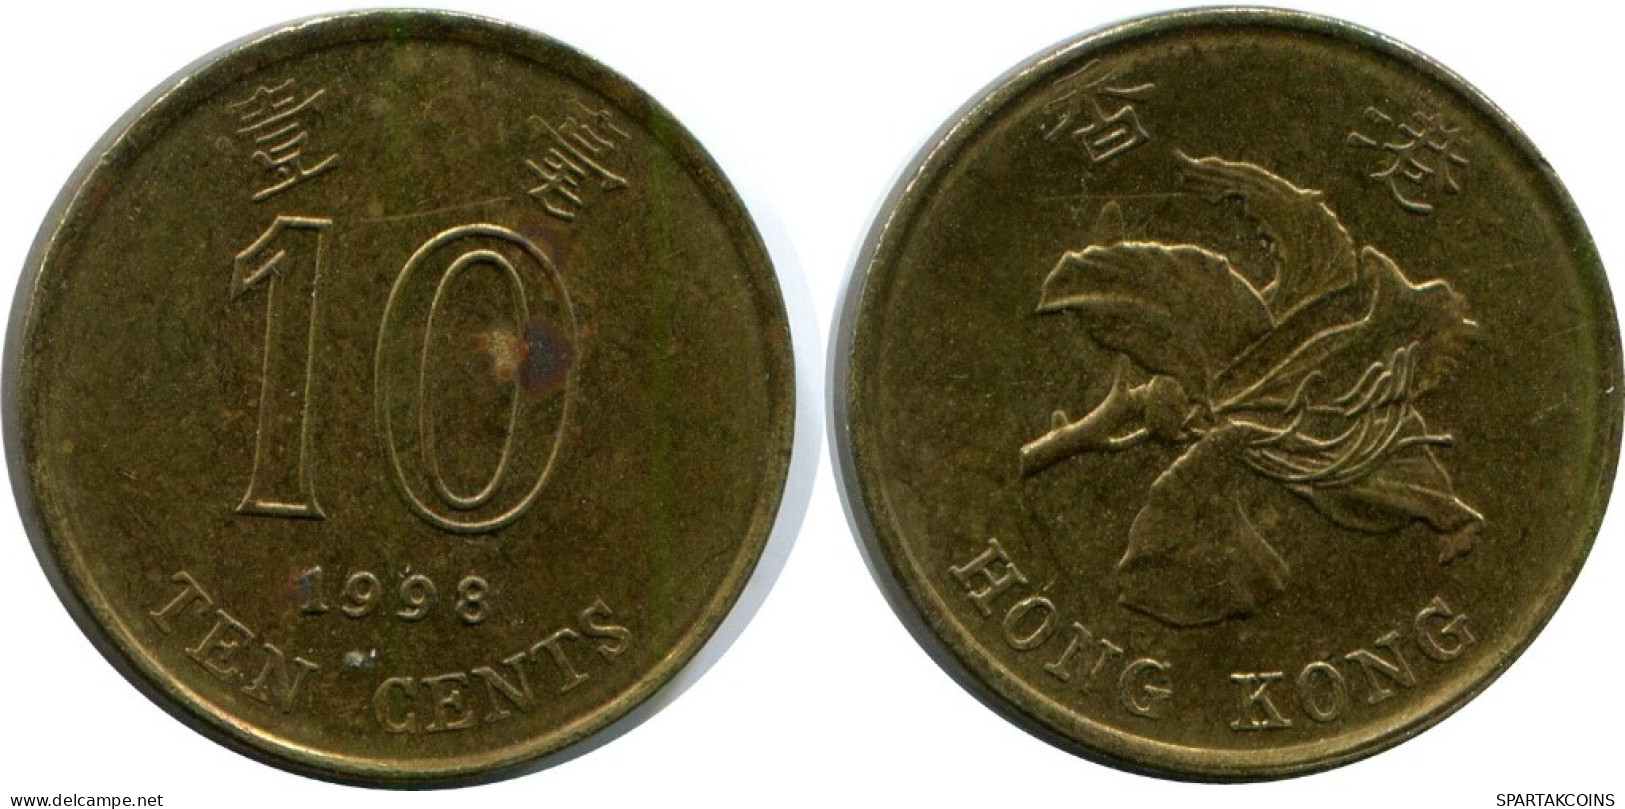 10 CENTS 1998 HONG KONG Coin #AH836.U.A - Hong Kong